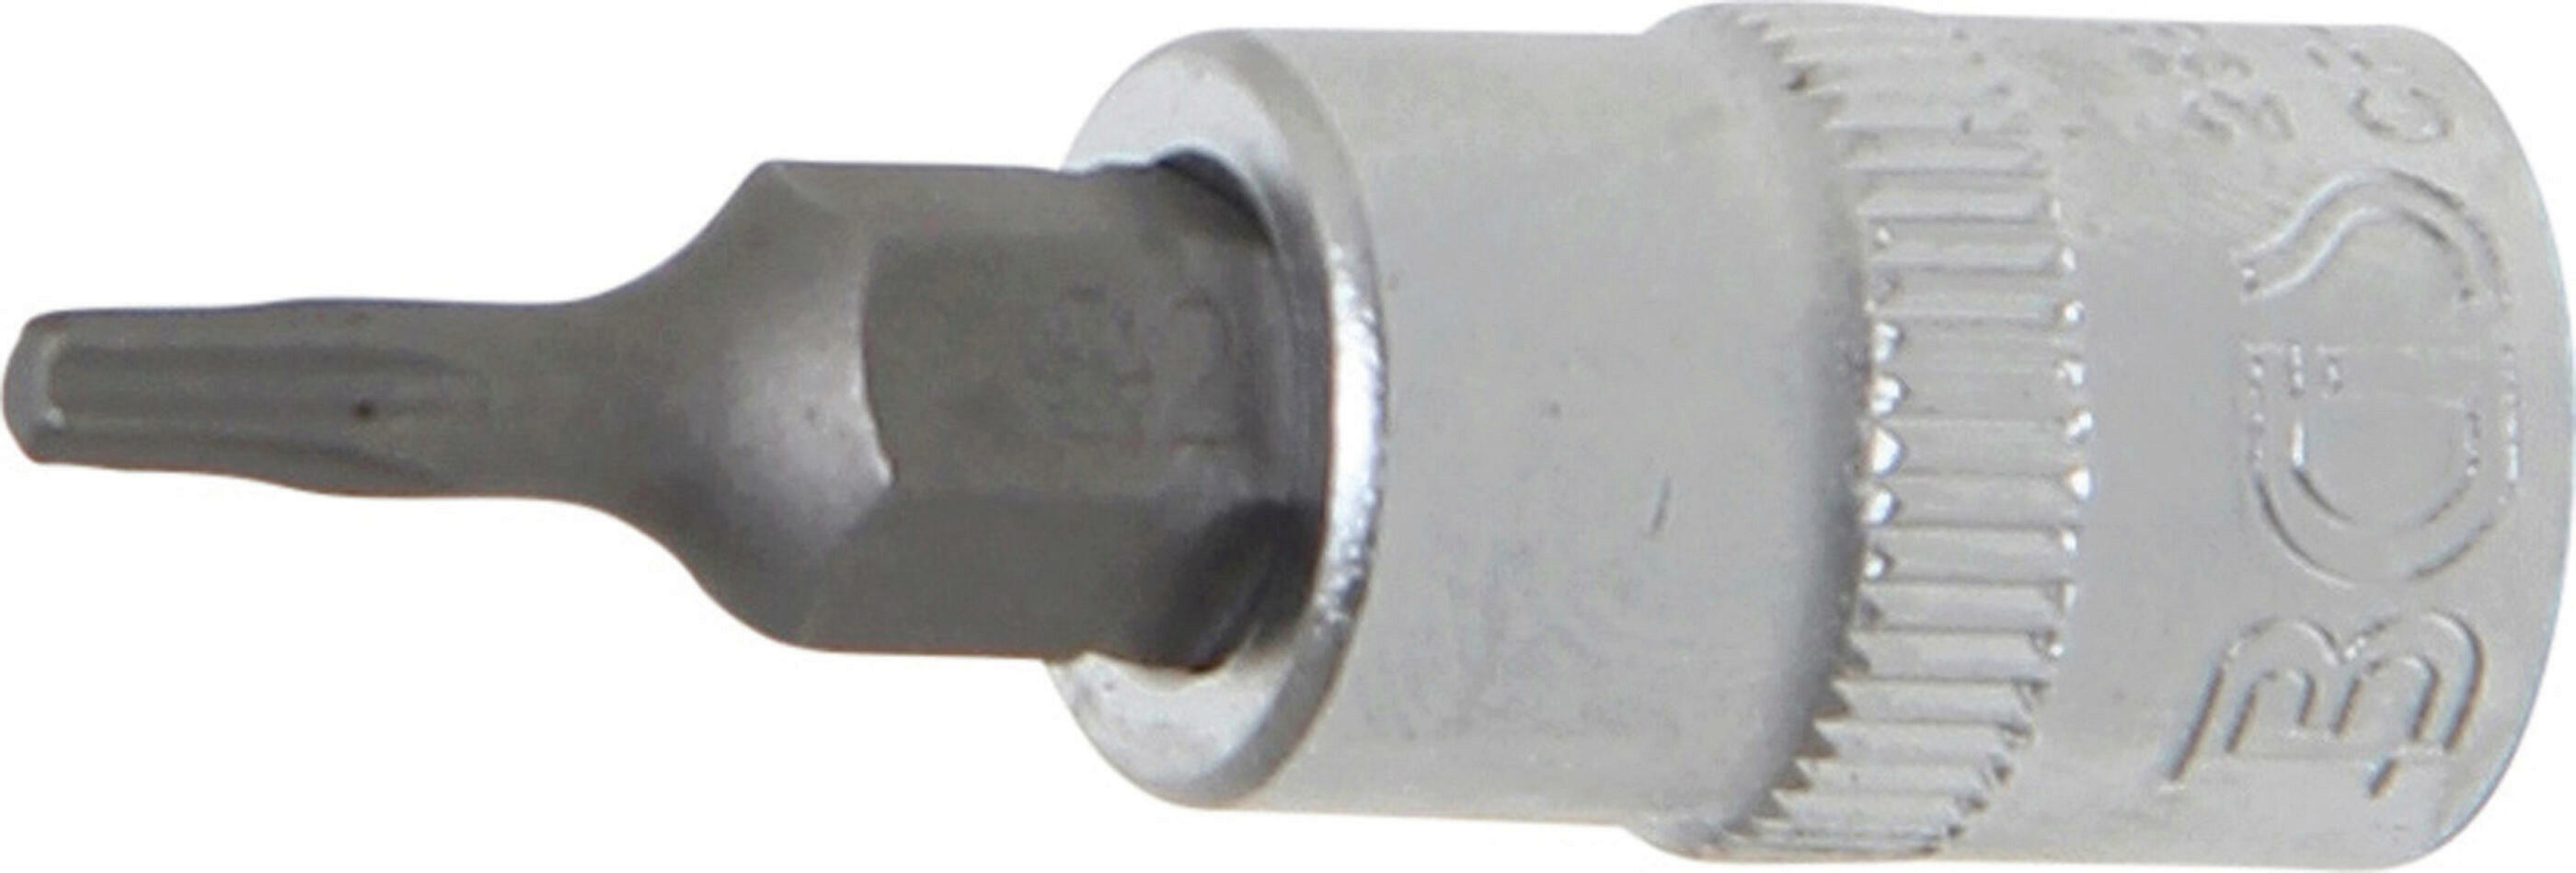 Bit-Einsatz | Antrieb Innenvierkant 6,3 mm (1/4") | T-Profil (für Torx) T9